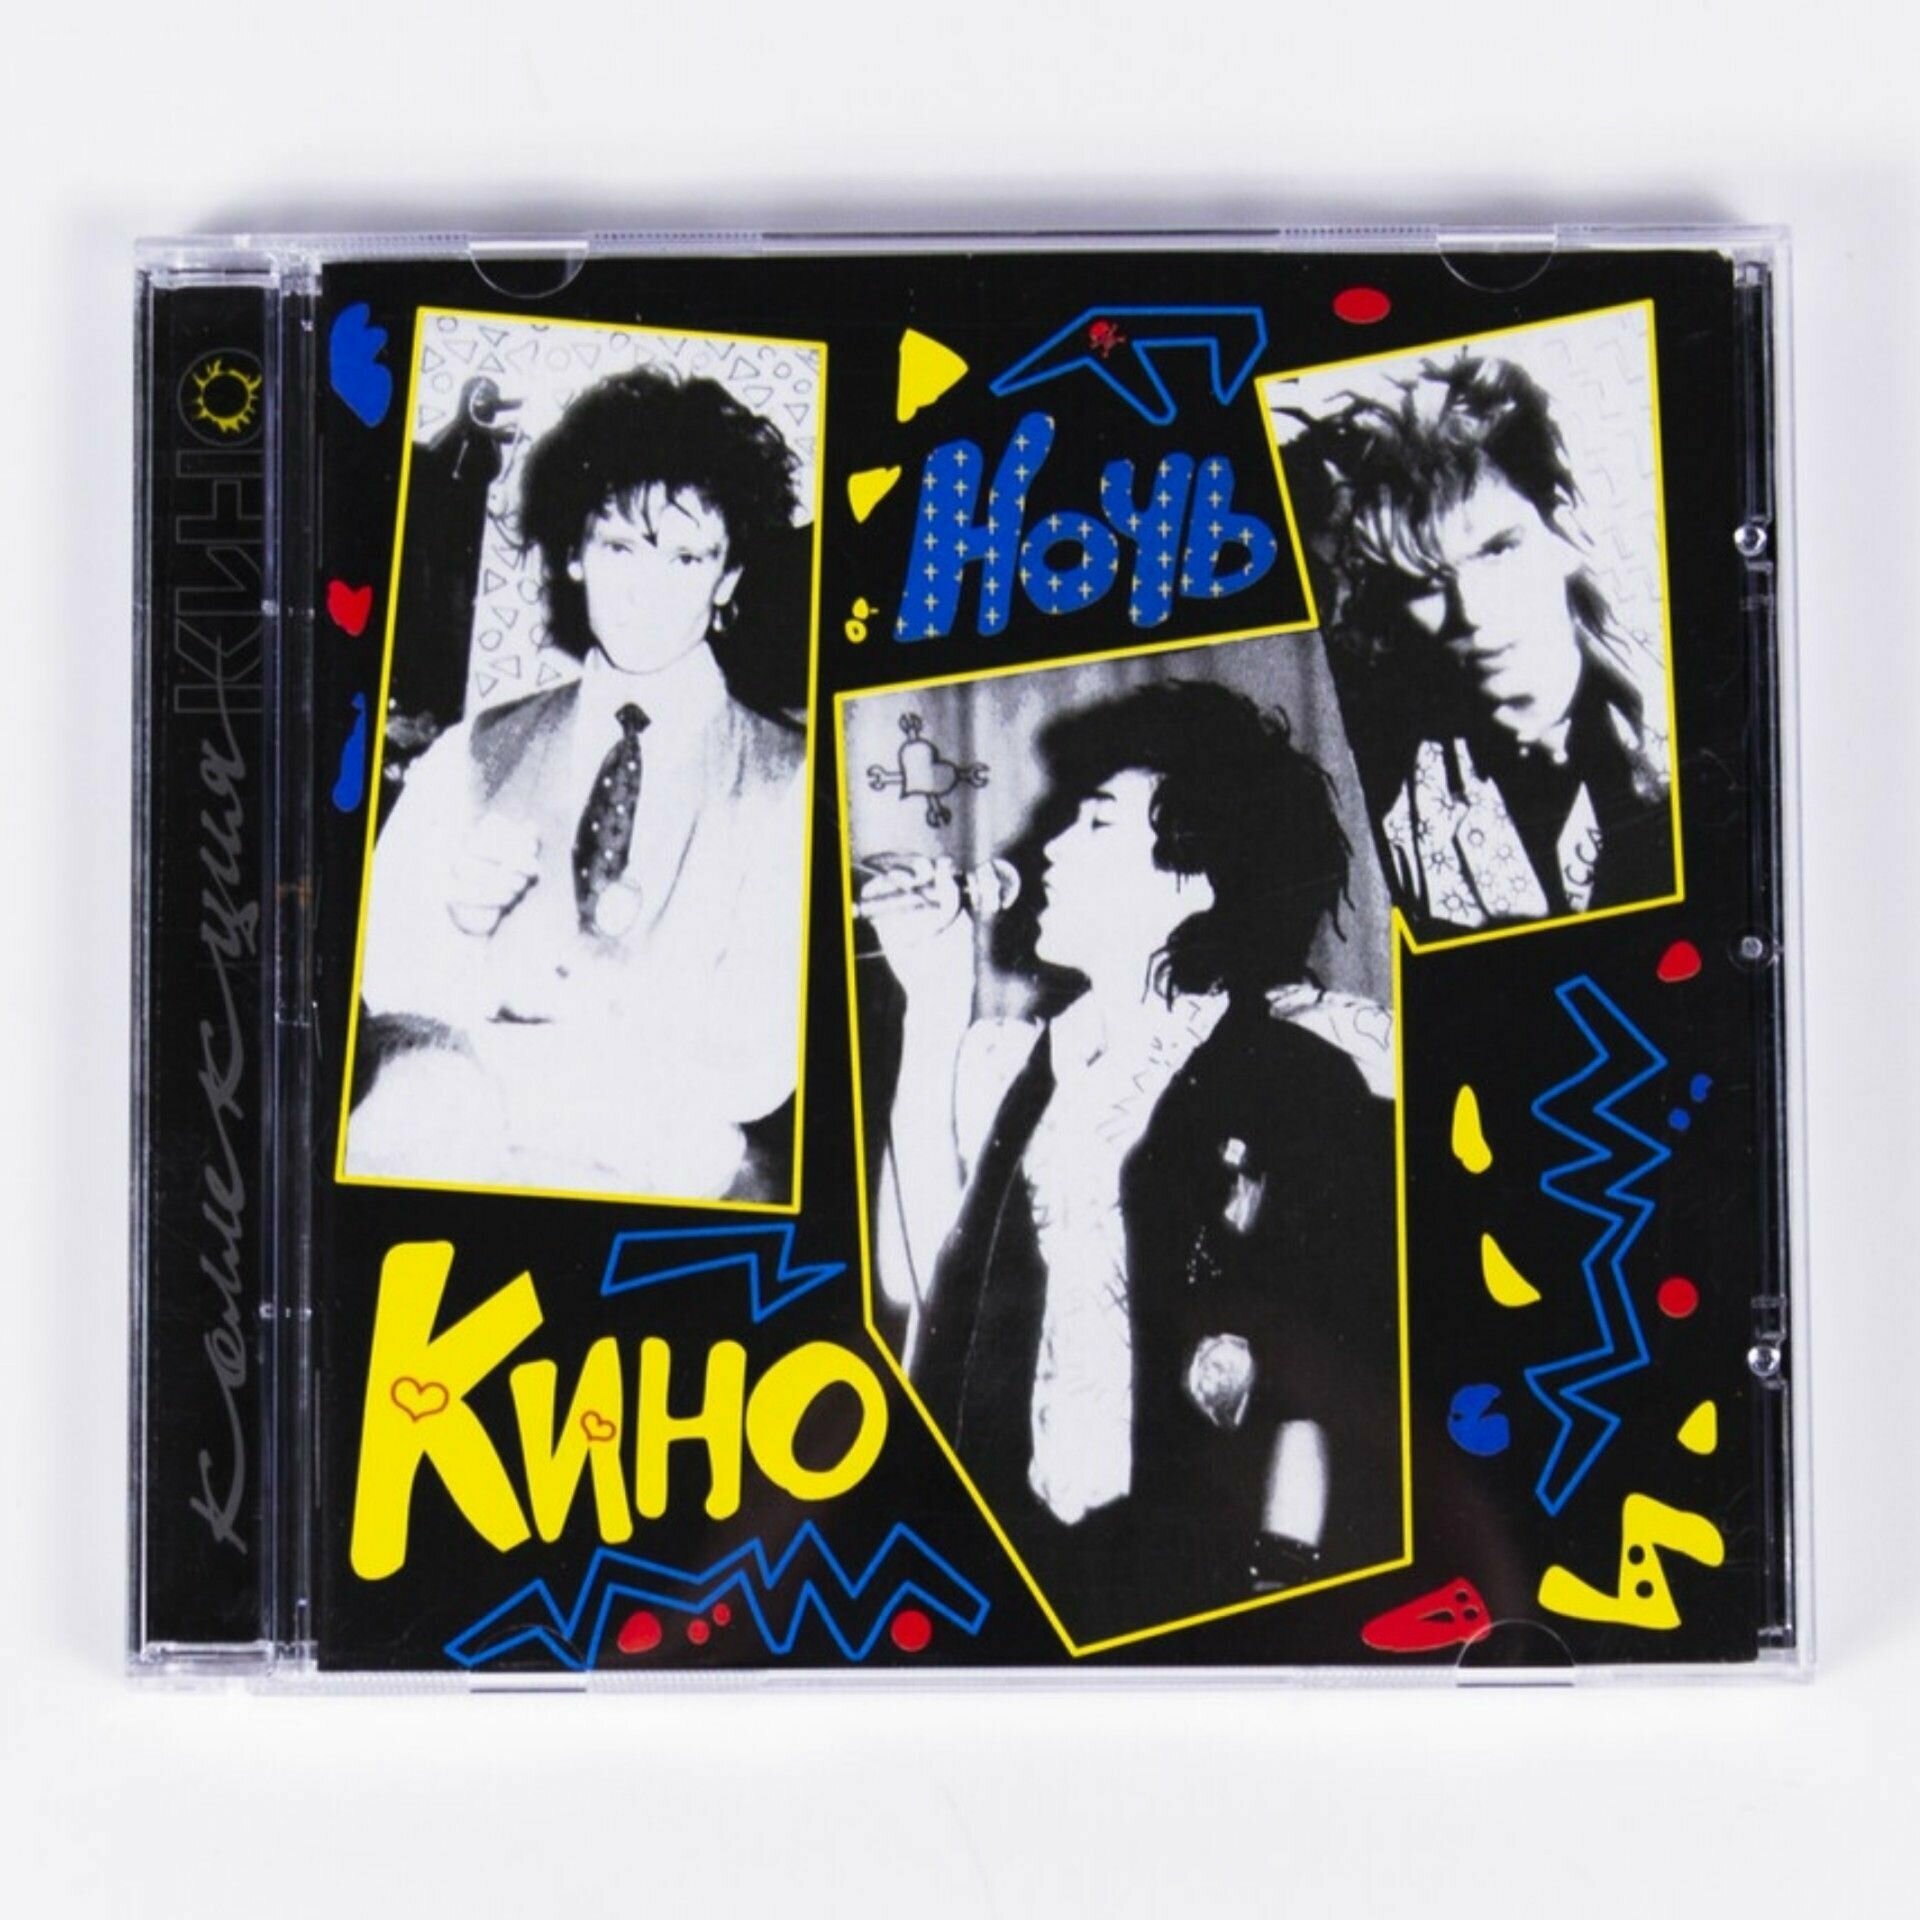 CD "Кино - Ночь" Ремастированное переиздание на компакт диске с буклетом и бонус-треками.